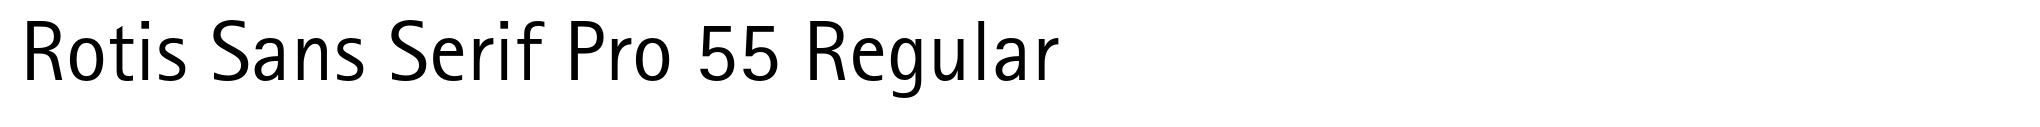 Rotis Sans Serif Pro 55 Regular image